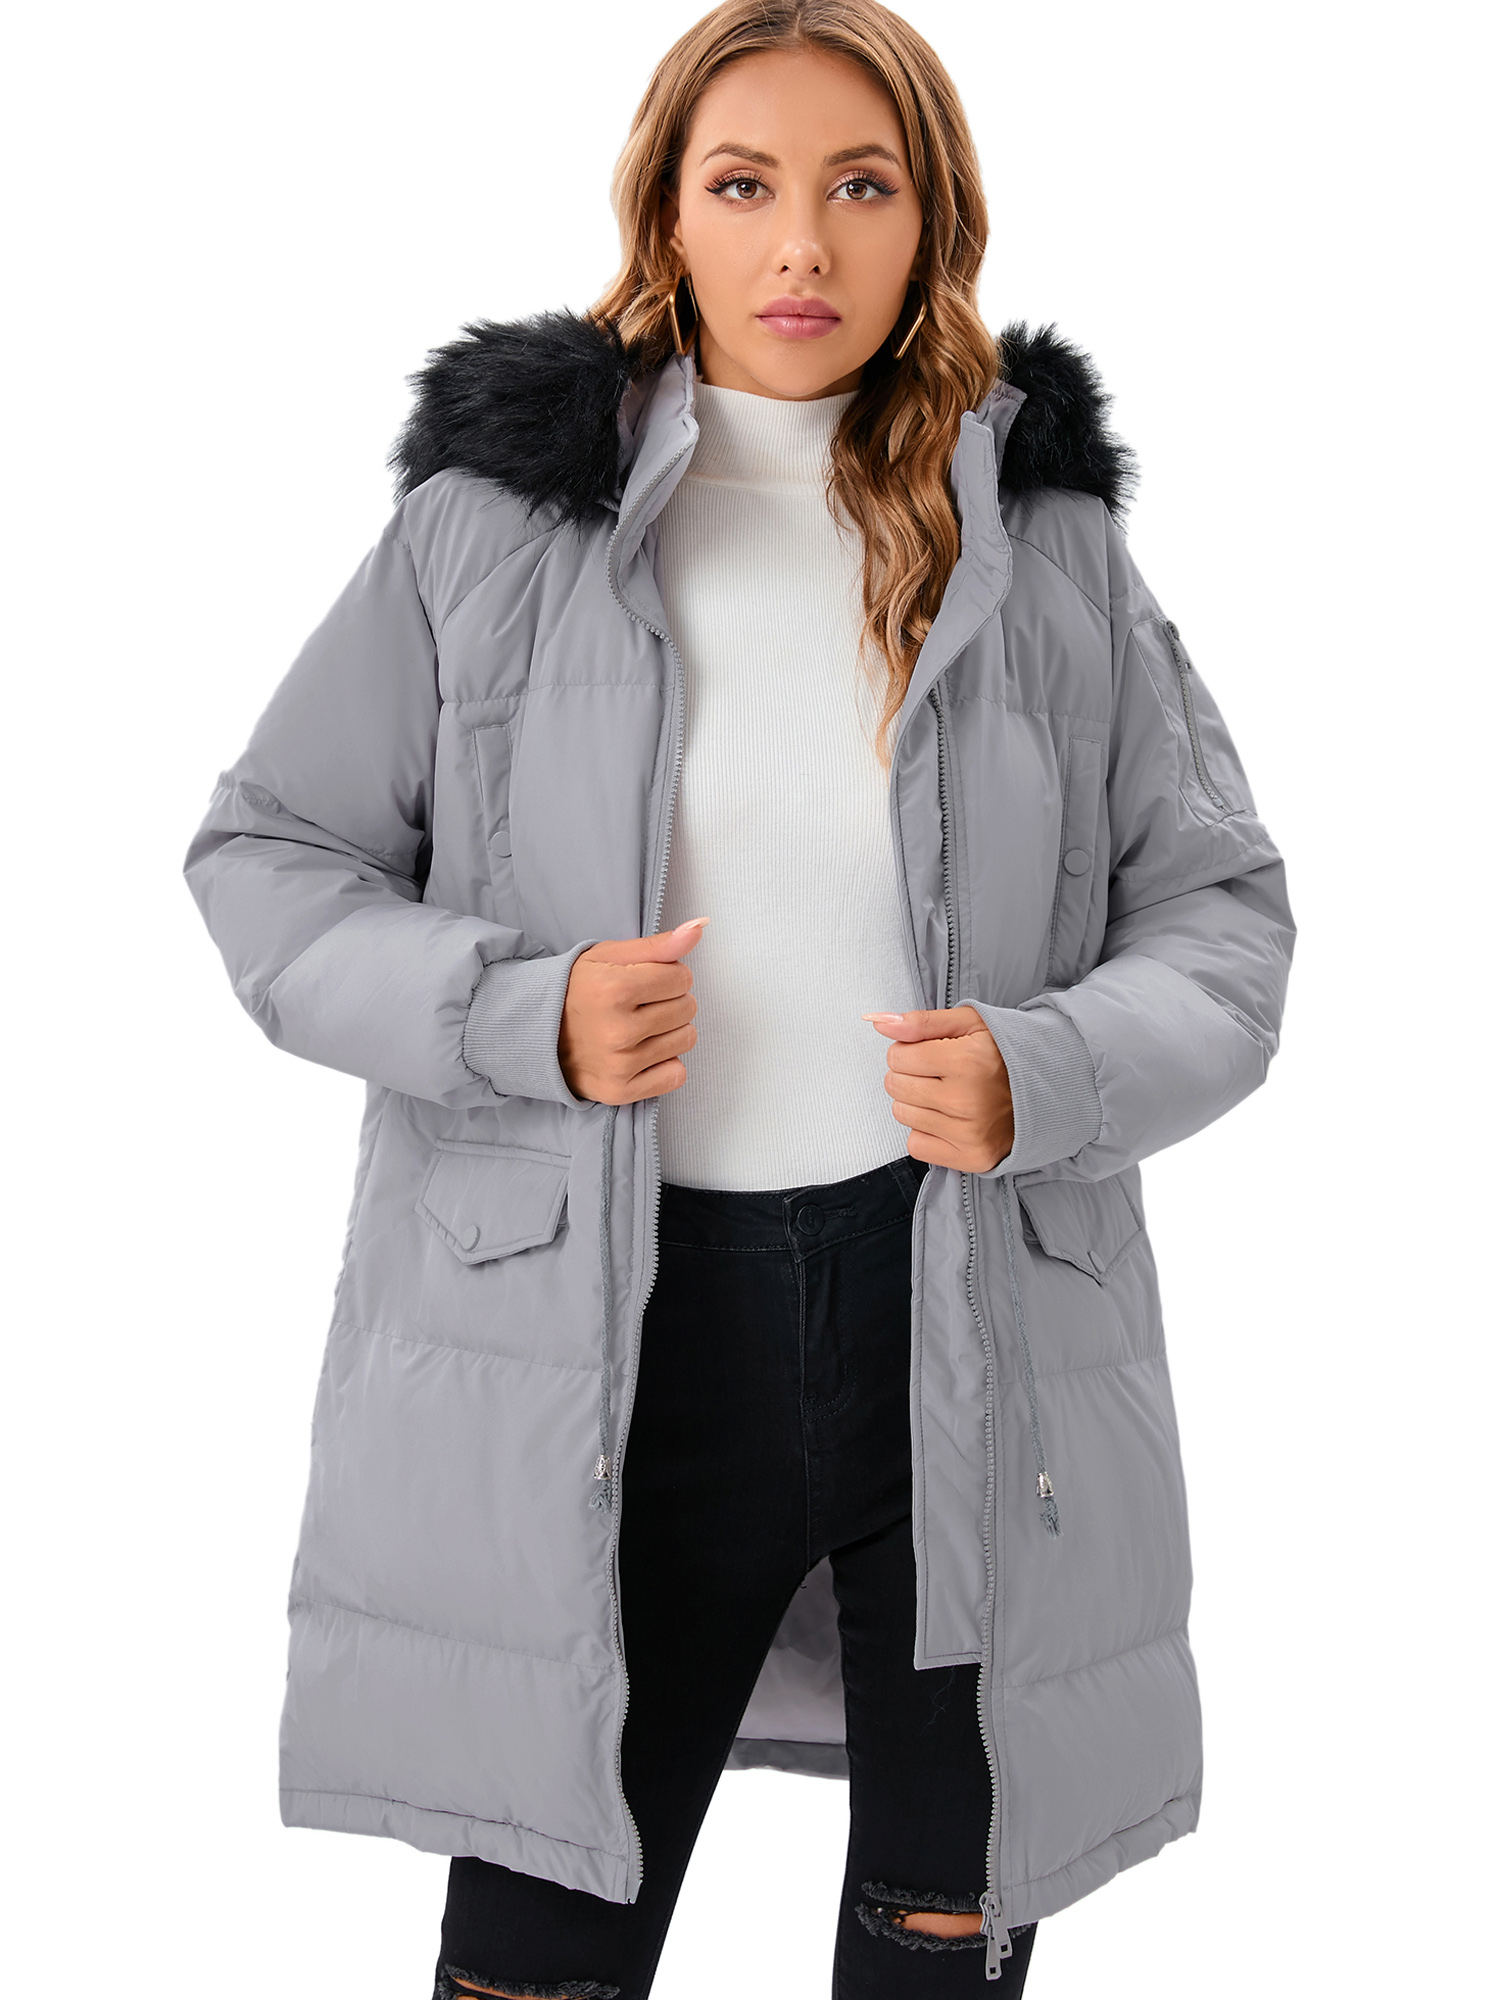 LELINTA Women's Winter Long Down Jacket Thickened Outwear Warm Puffer Fur Trim Hooded Coat Waterproof Rain Zip Parka, Black/ Camouflage - image 3 of 7